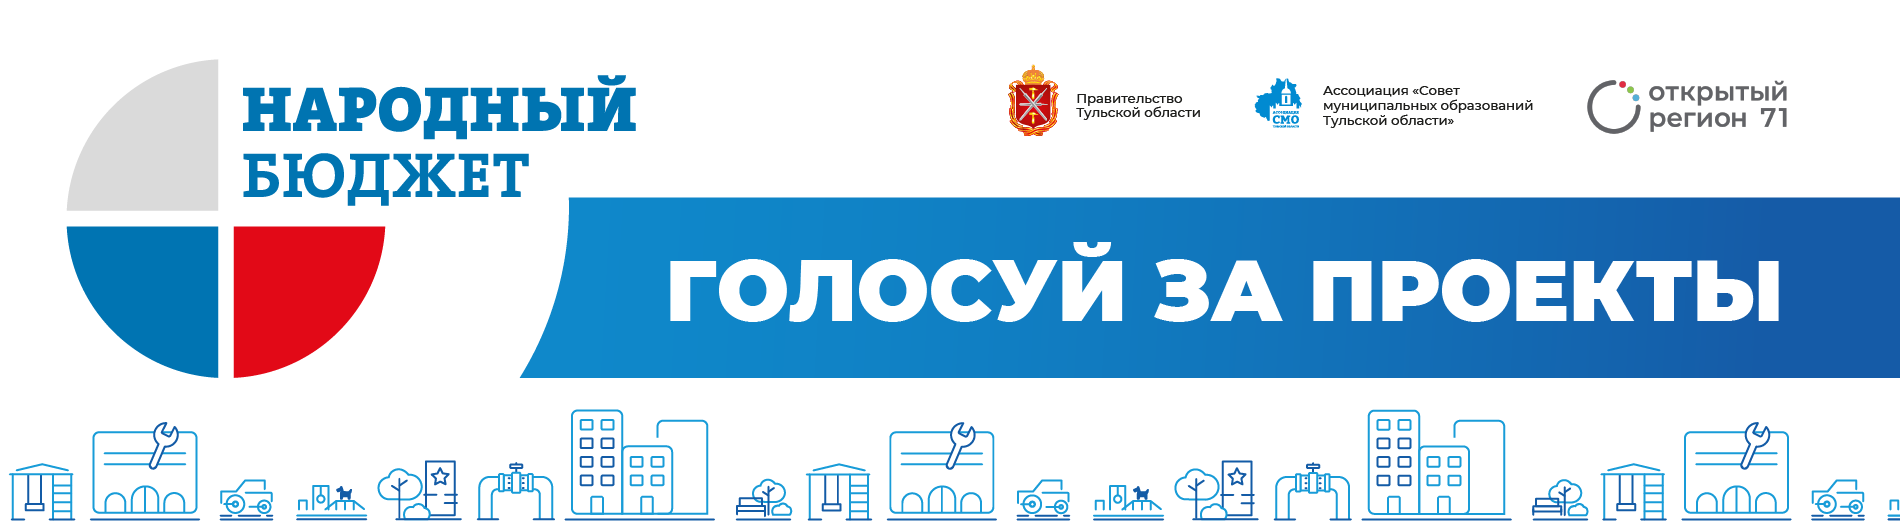 с 18 марта по 18 апреля на портале «Открытый регион 71» состоится электронное голосование в рамках проекта «Народный бюджет-2025».